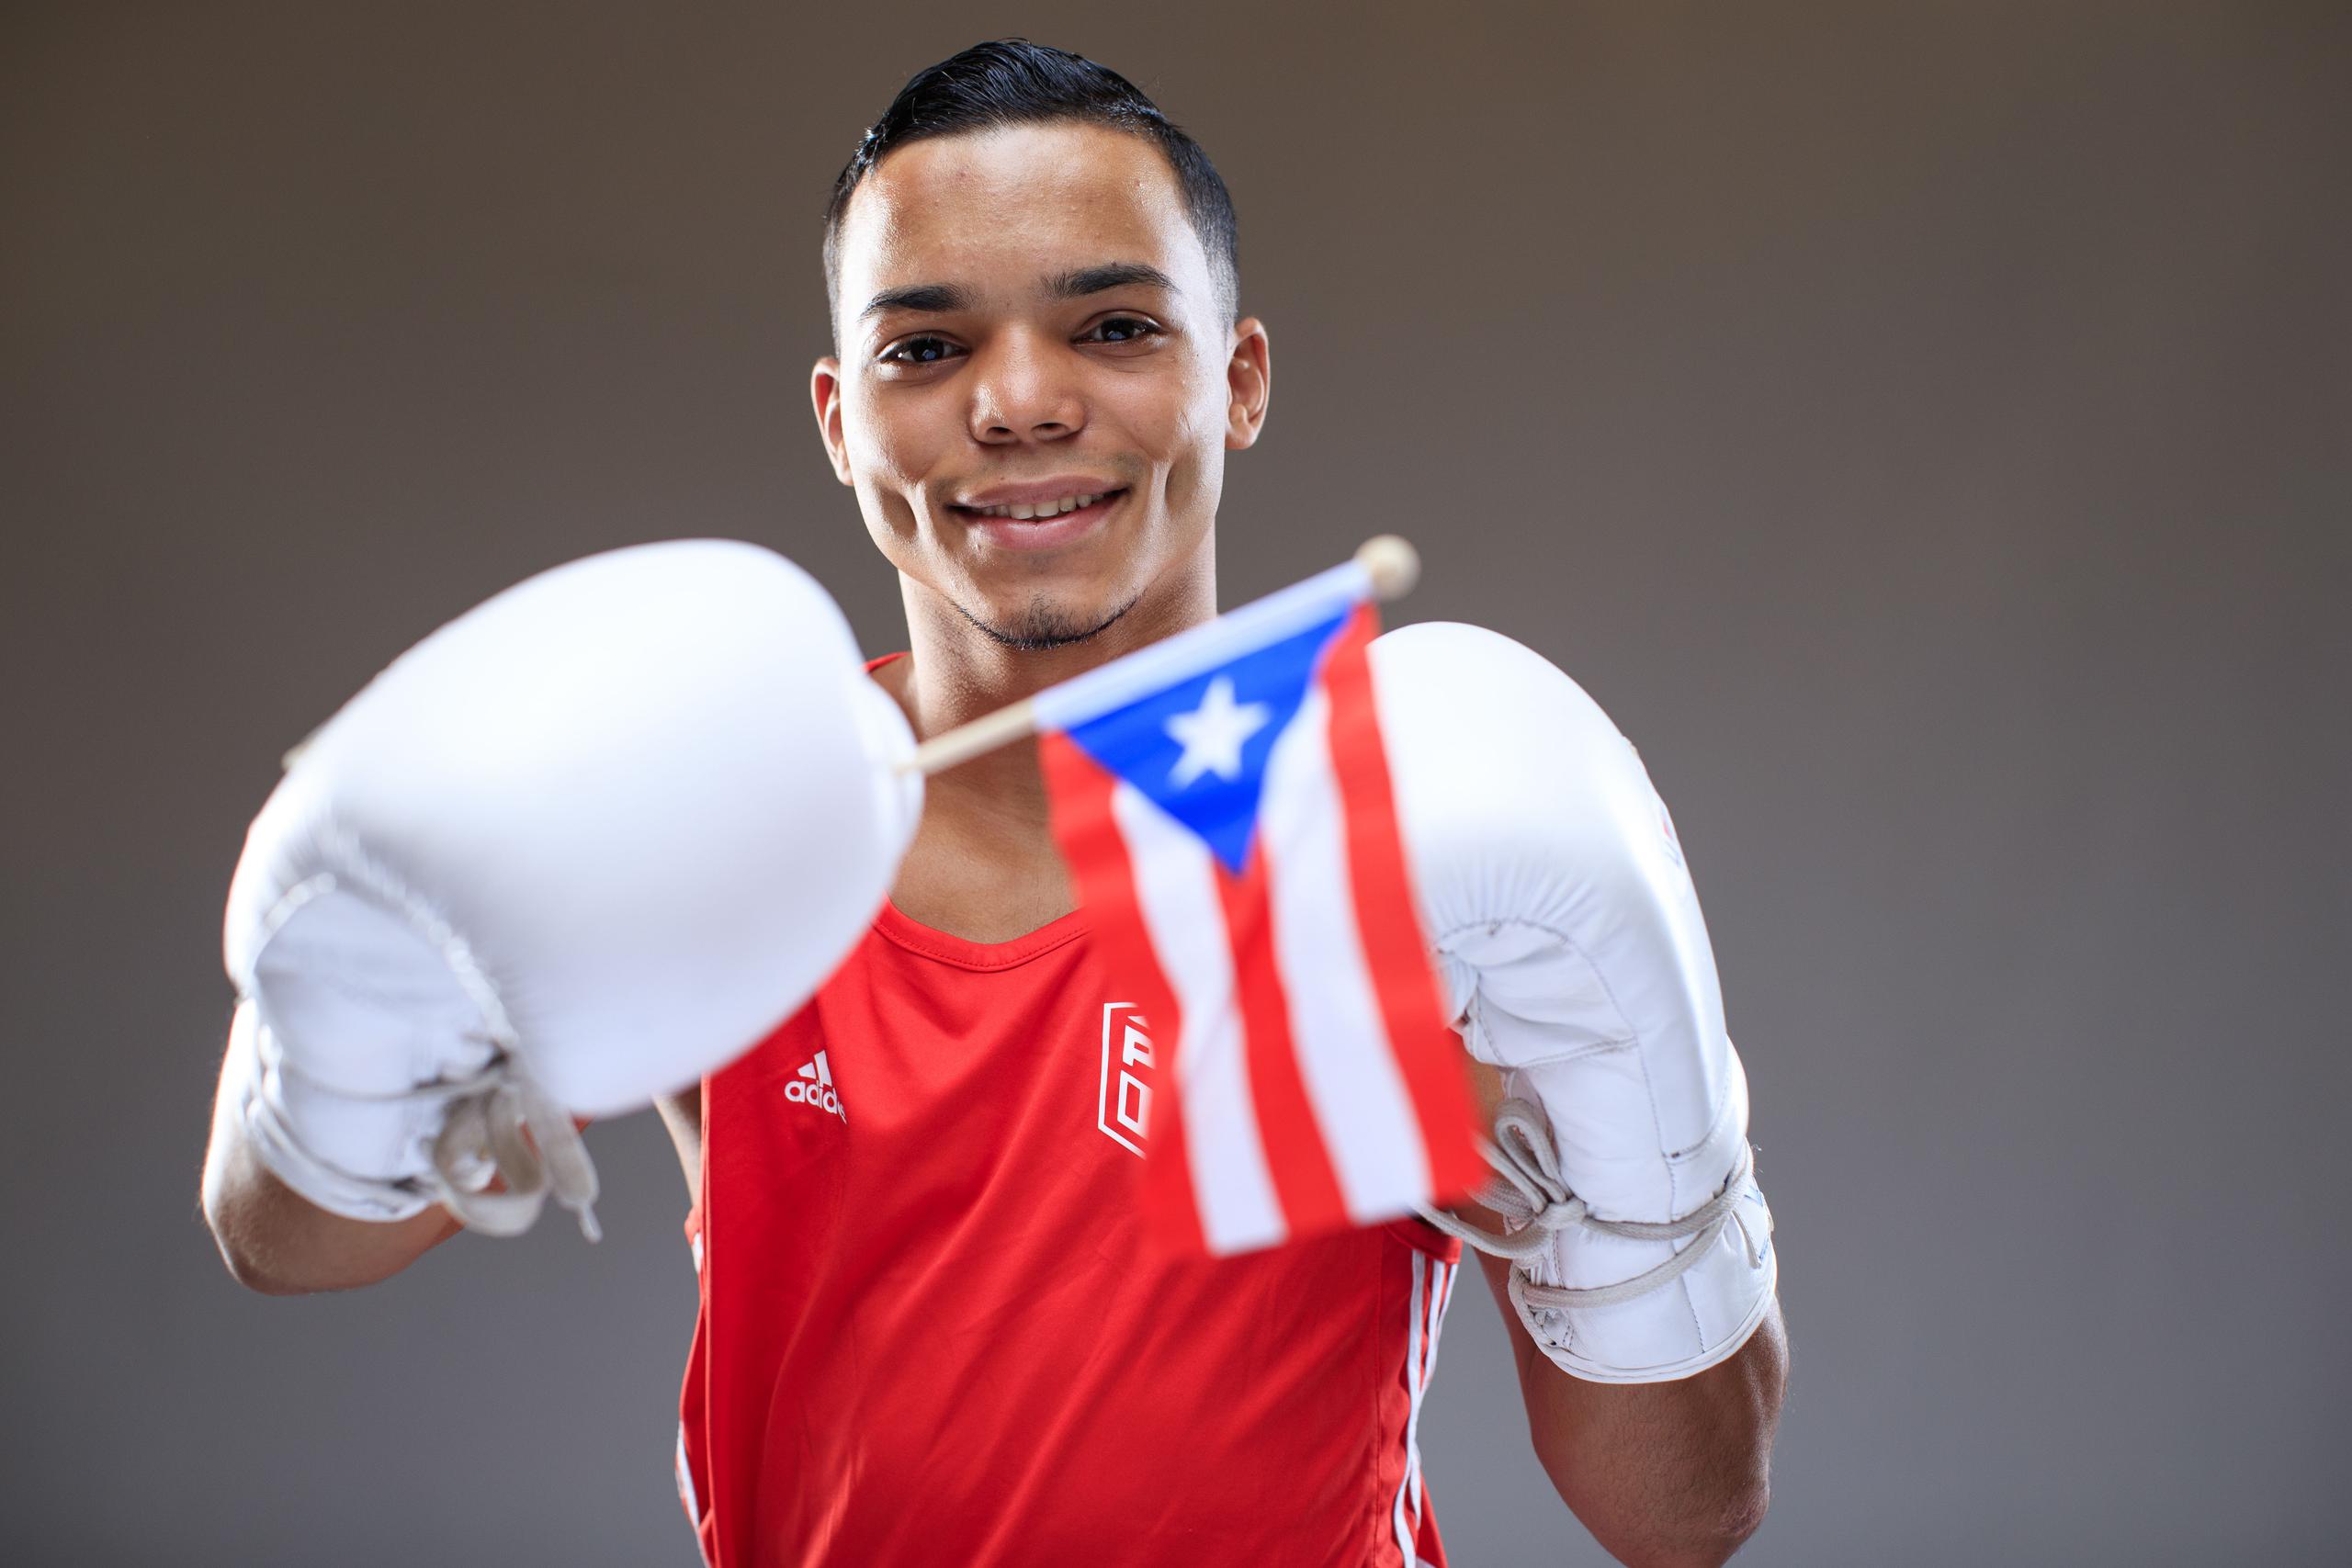 Yankiel Rivera peleará, en horario de Puerto Rico, este lunes a las 5:00 de la mañana.